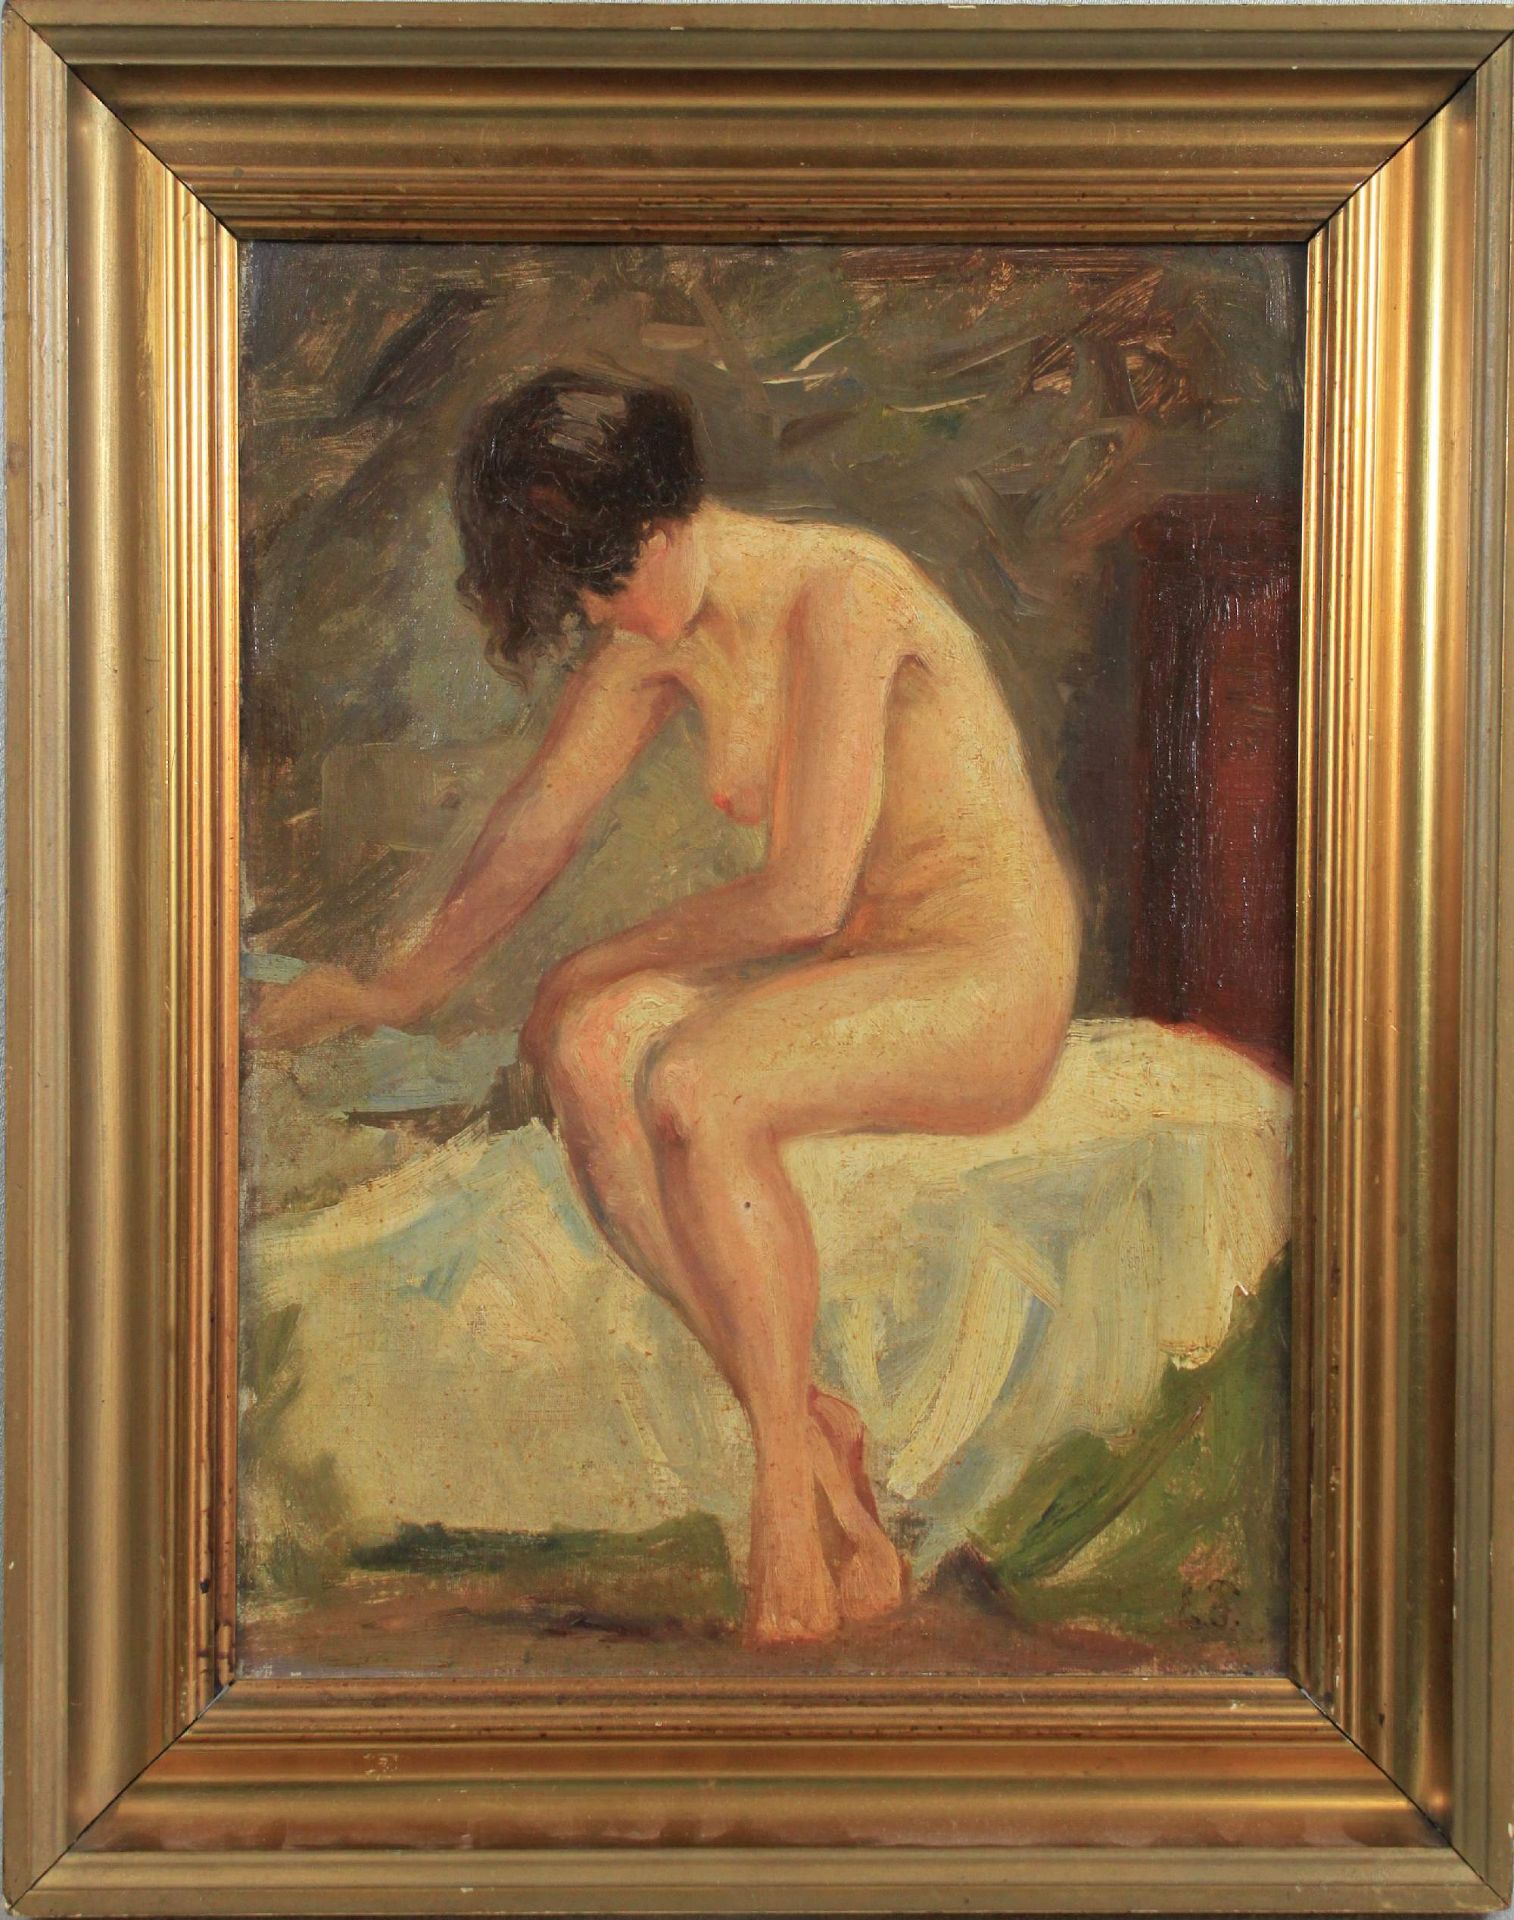 Monogrammist E.F., Sitzender Frauenakt, Öl auf Leinwand